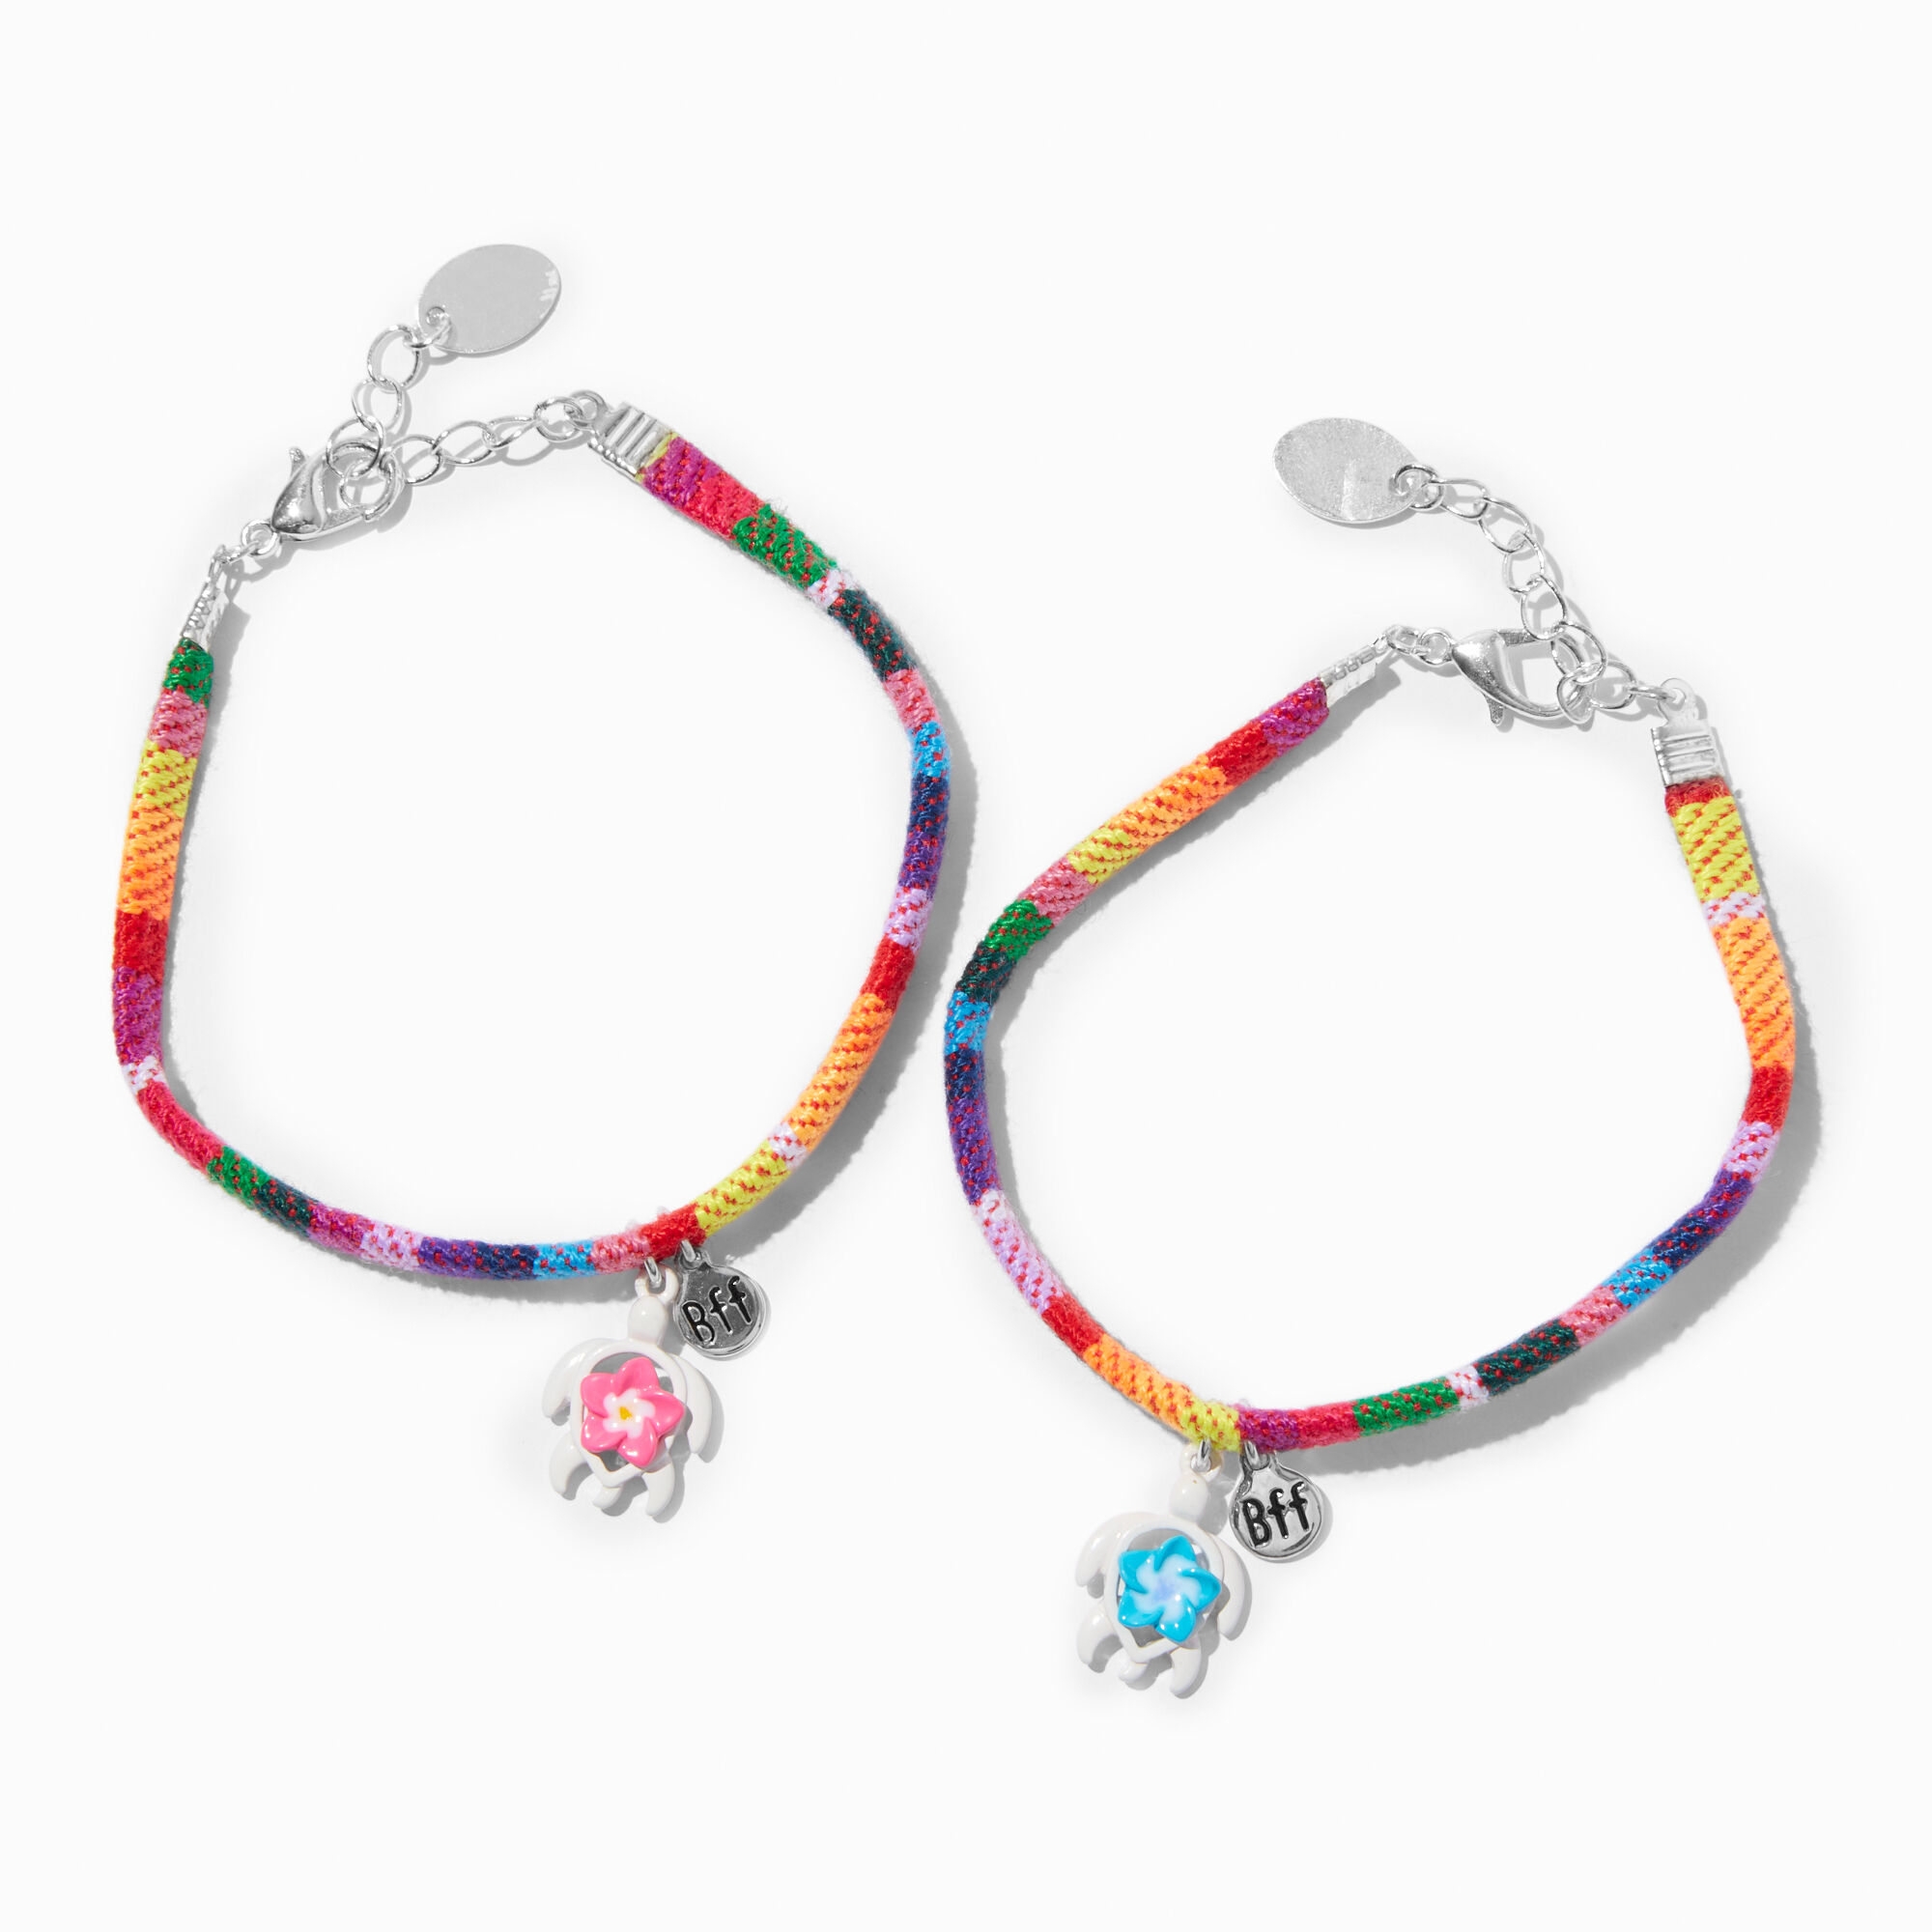 Cherry Friendship Bracelet Woven, Strawberry Handwoven VSCO Bracelets,  Gifts… | Friendship bracelet patterns easy, Diy friendship bracelets  patterns, Yarn bracelets